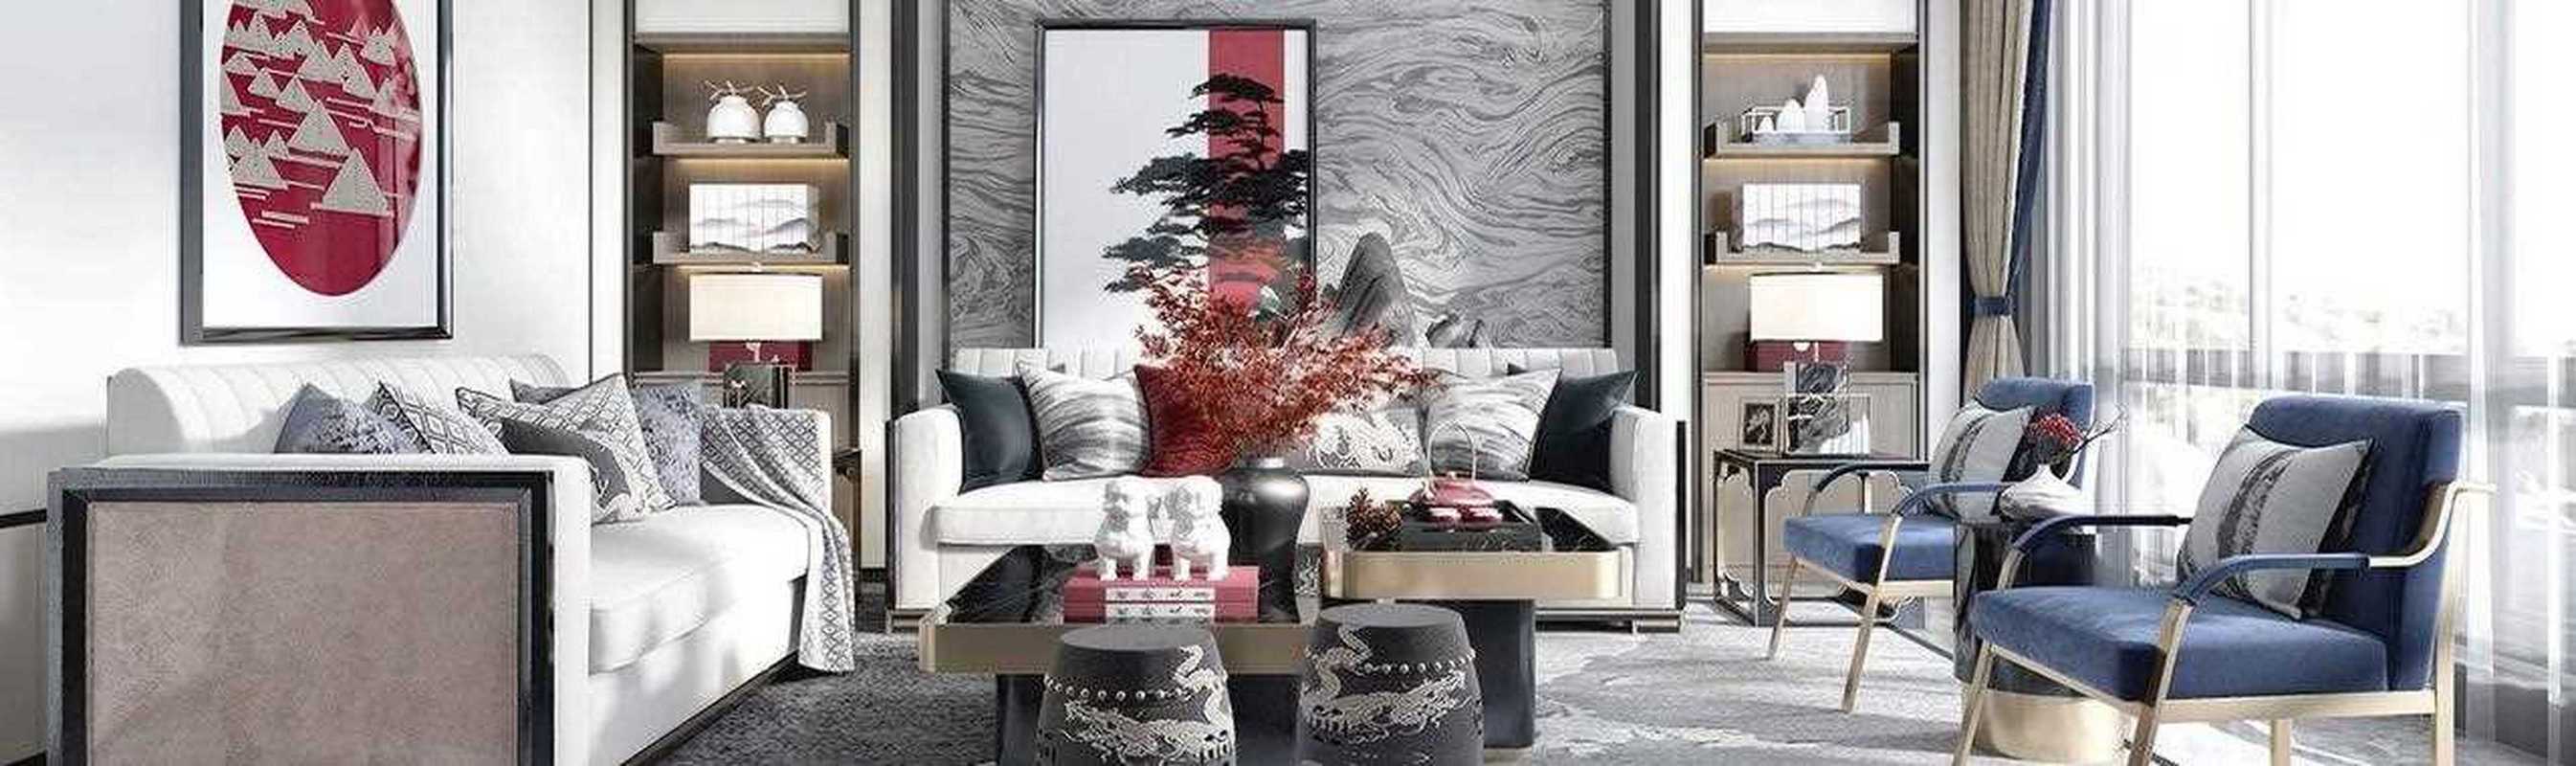 新中式客厅 沙发组合 墙面造型效果图